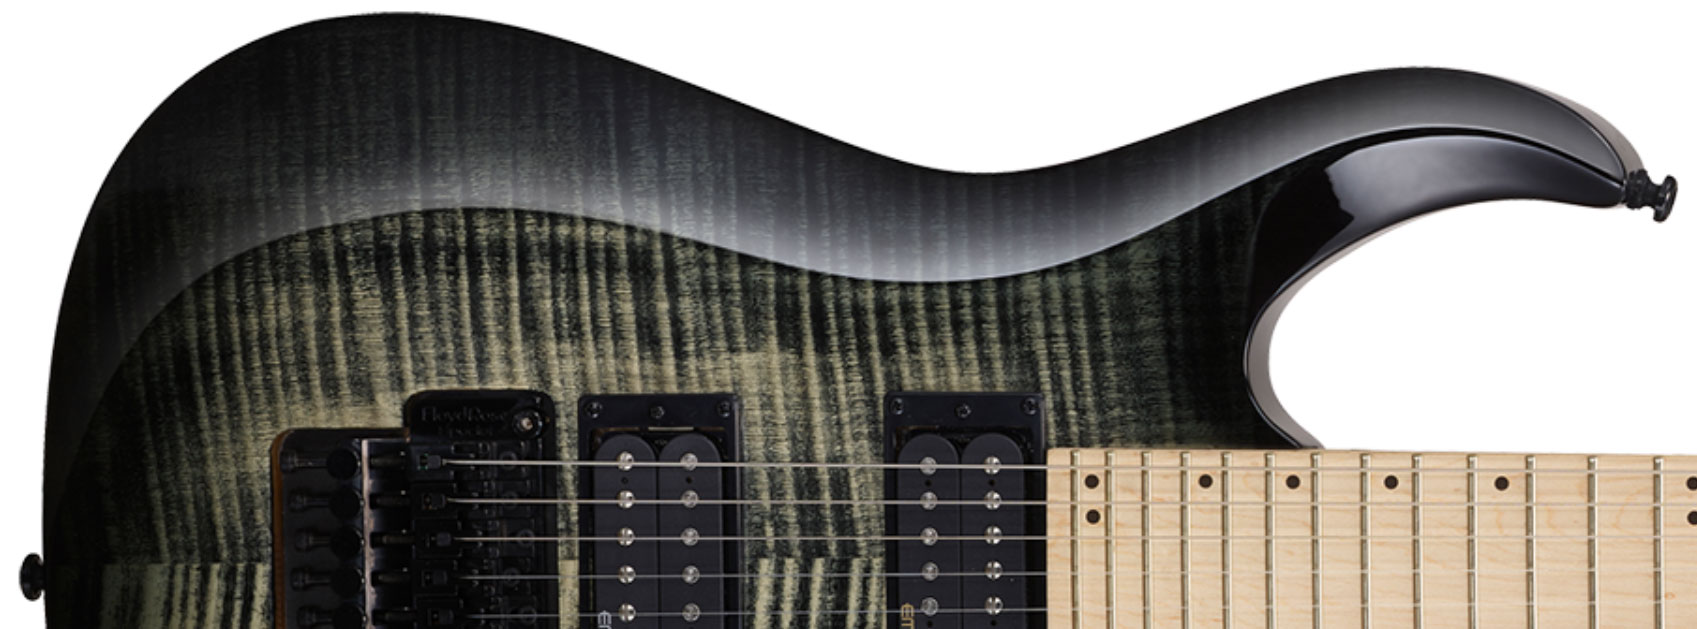 Cort X300 Fr Hh Mn - Grey Burst - Guitarra eléctrica con forma de str. - Variation 1